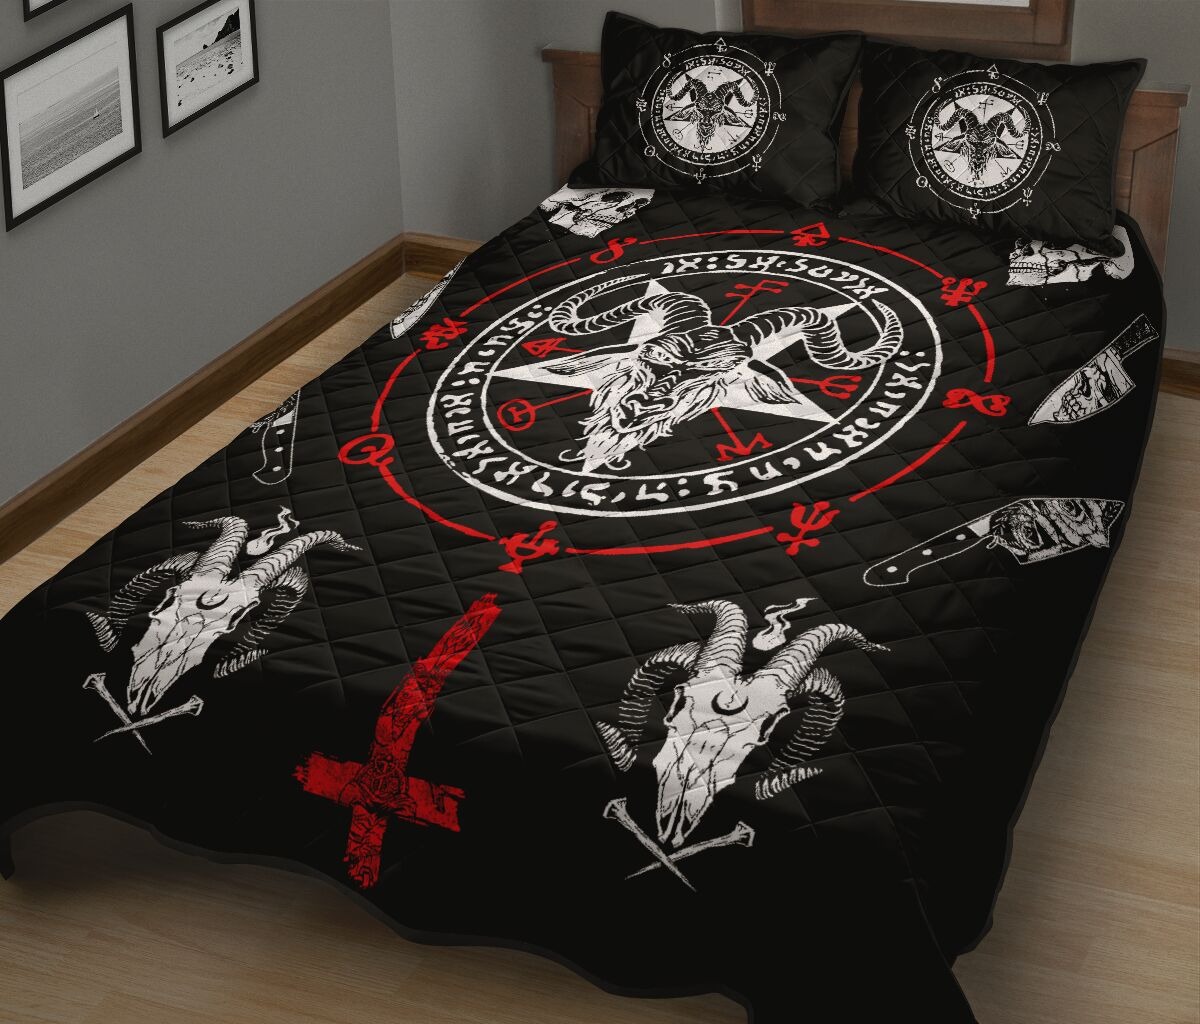 Hail Satan bedding set 1